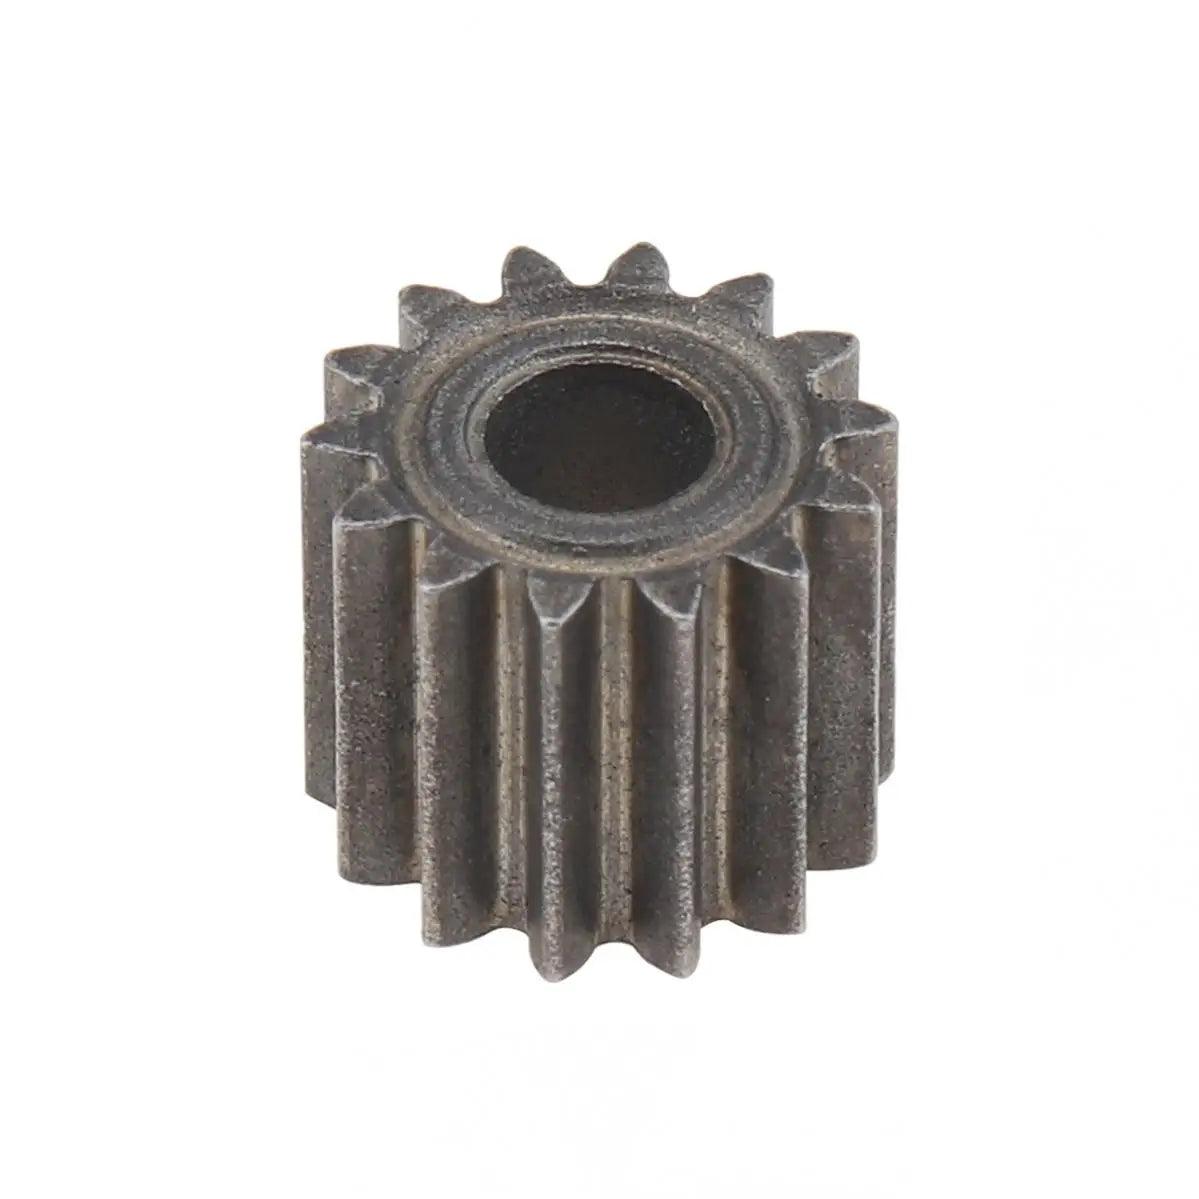 Motor Gears 14 Teeth 8.2mm 9.5mm Diameter Replaceable Motor Gear